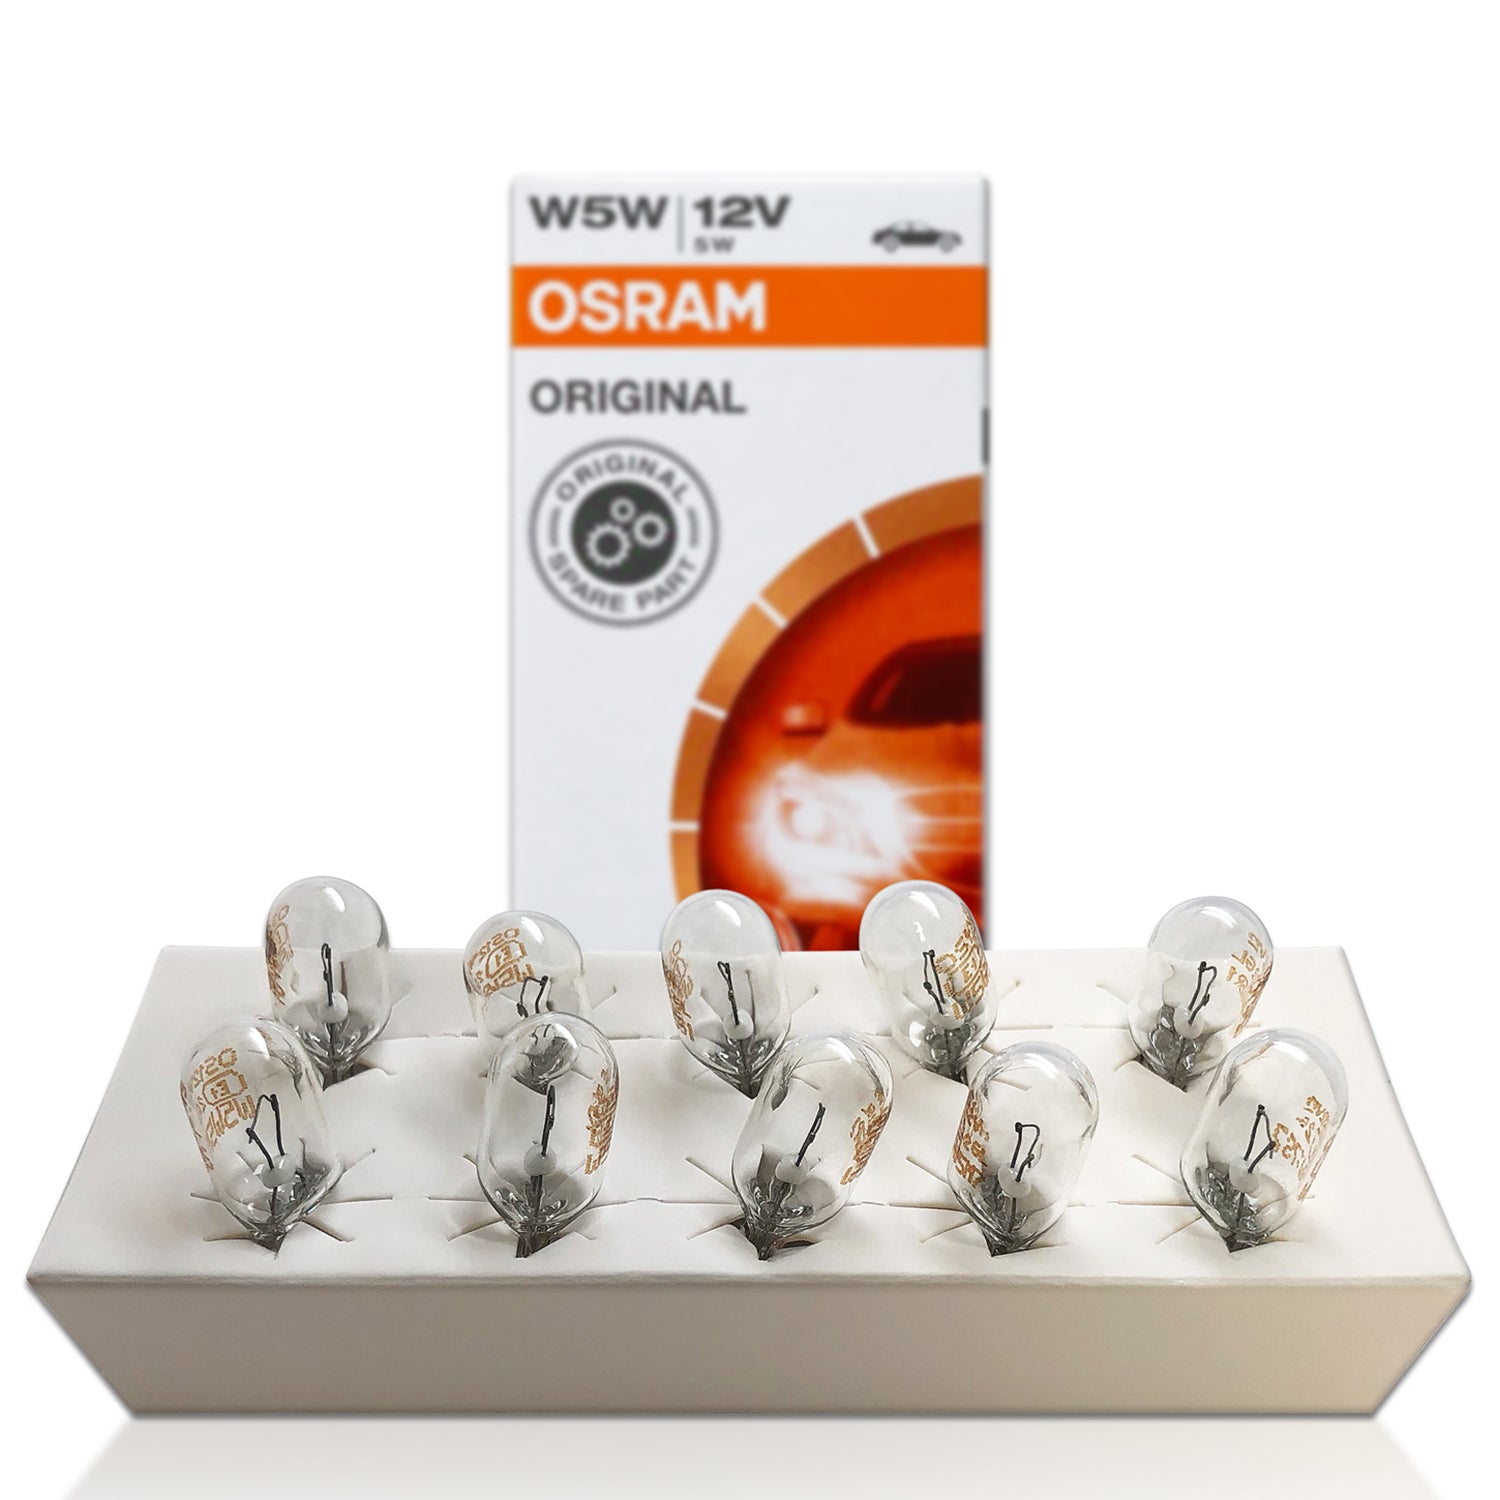 Osram LED width light T10 bulb 12V license plate reading light w5w signal  light 6000k car